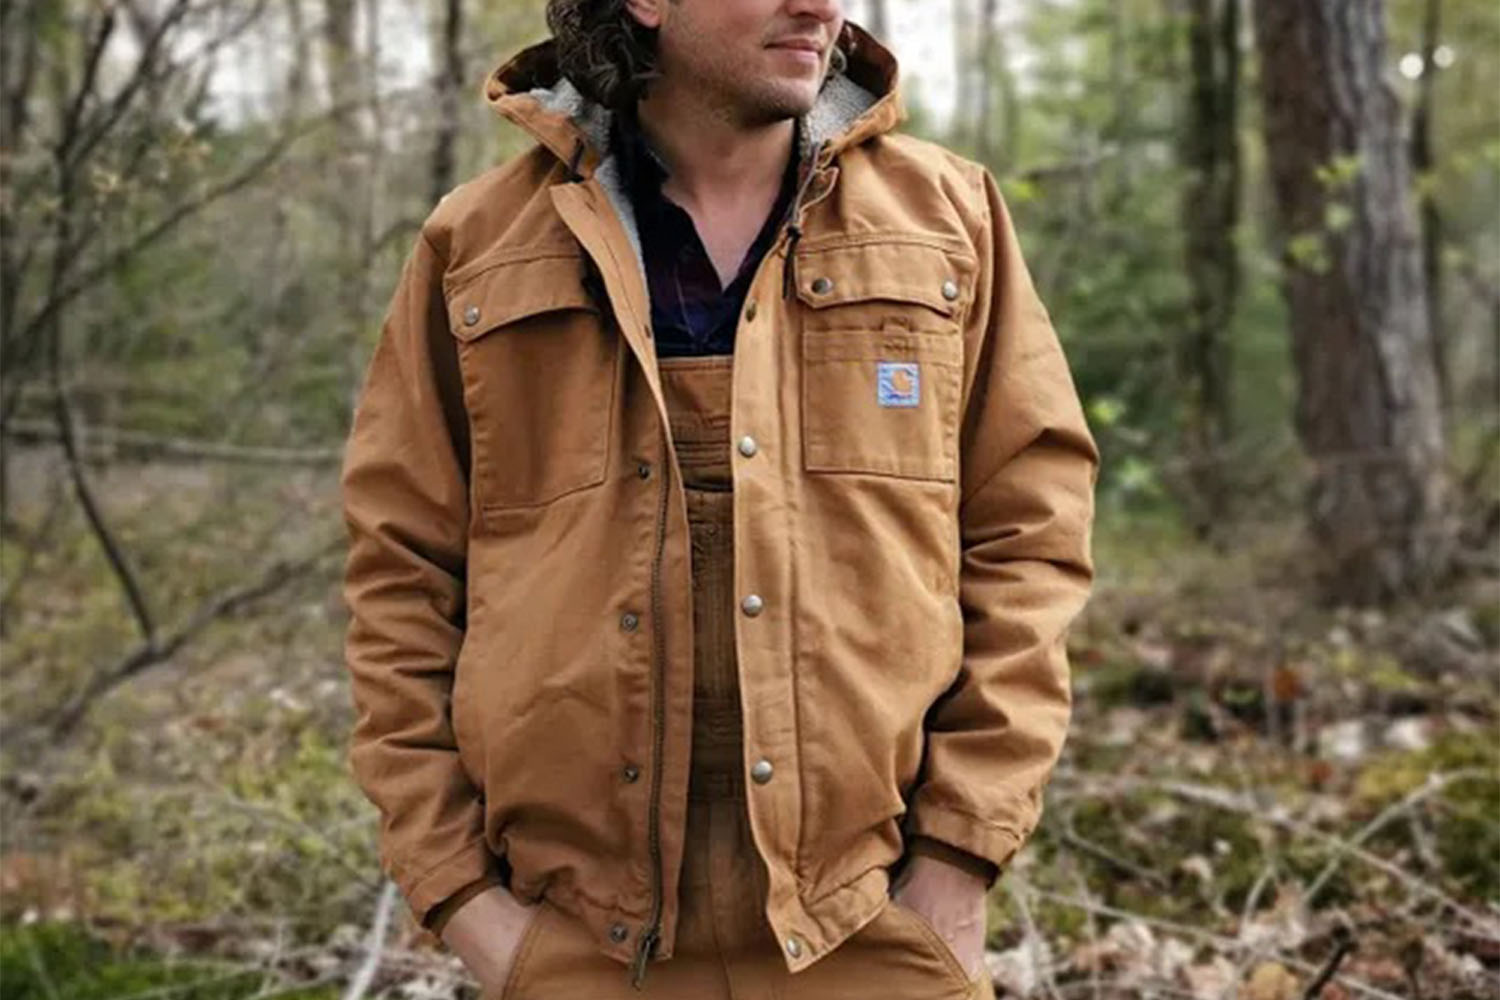 A model in a Carhartt jacket